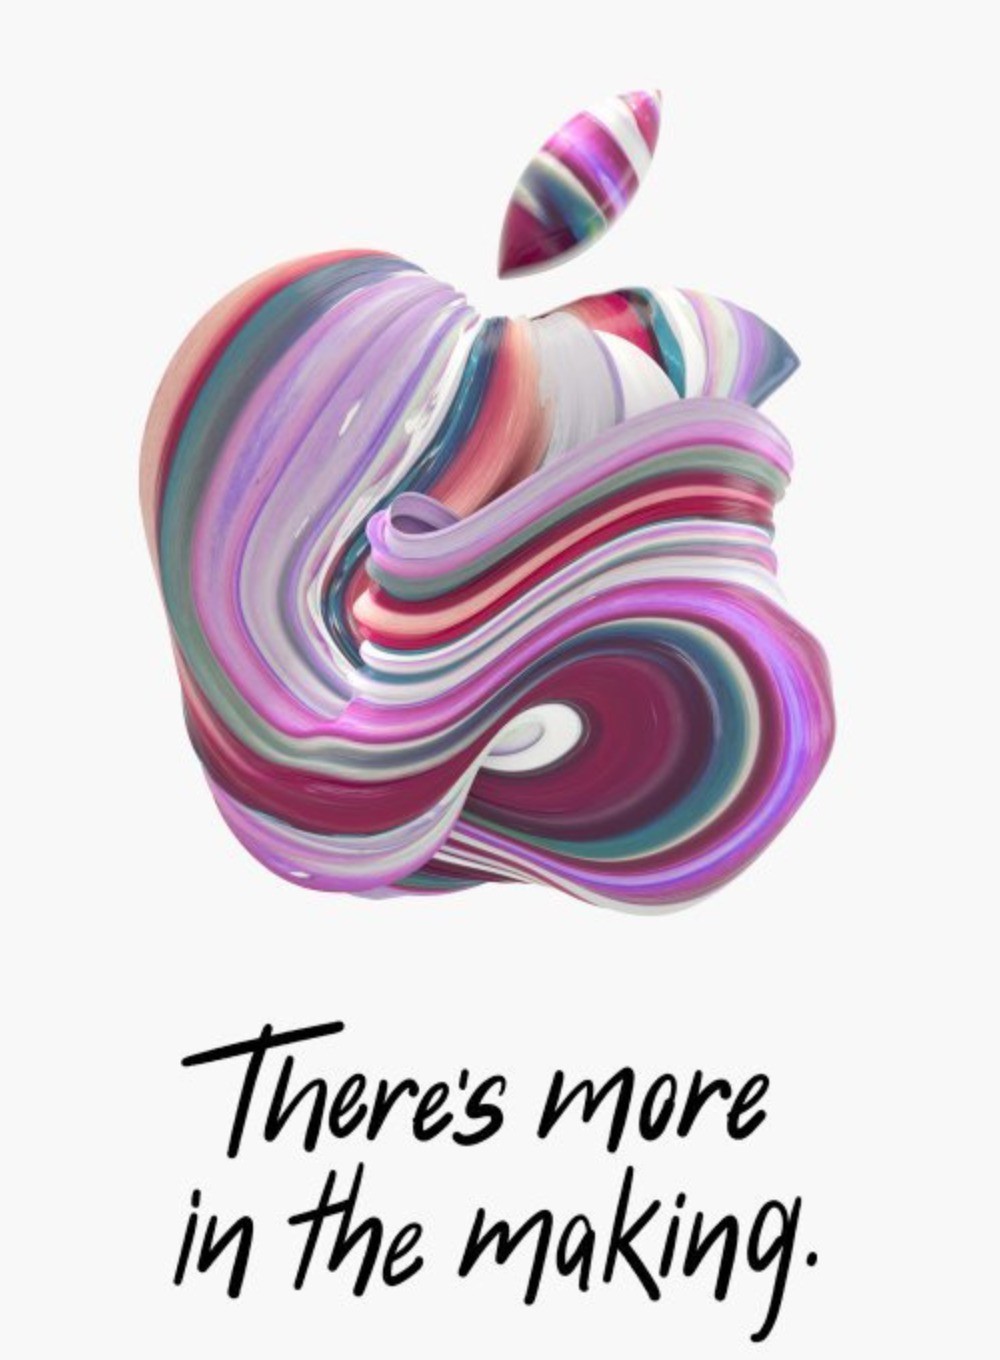 Quần quật cả trăm logo Táo khác nhau chỉ để in thiệp, đây hẳn là cách mà team design của Apple chạy deadline - Ảnh 10.